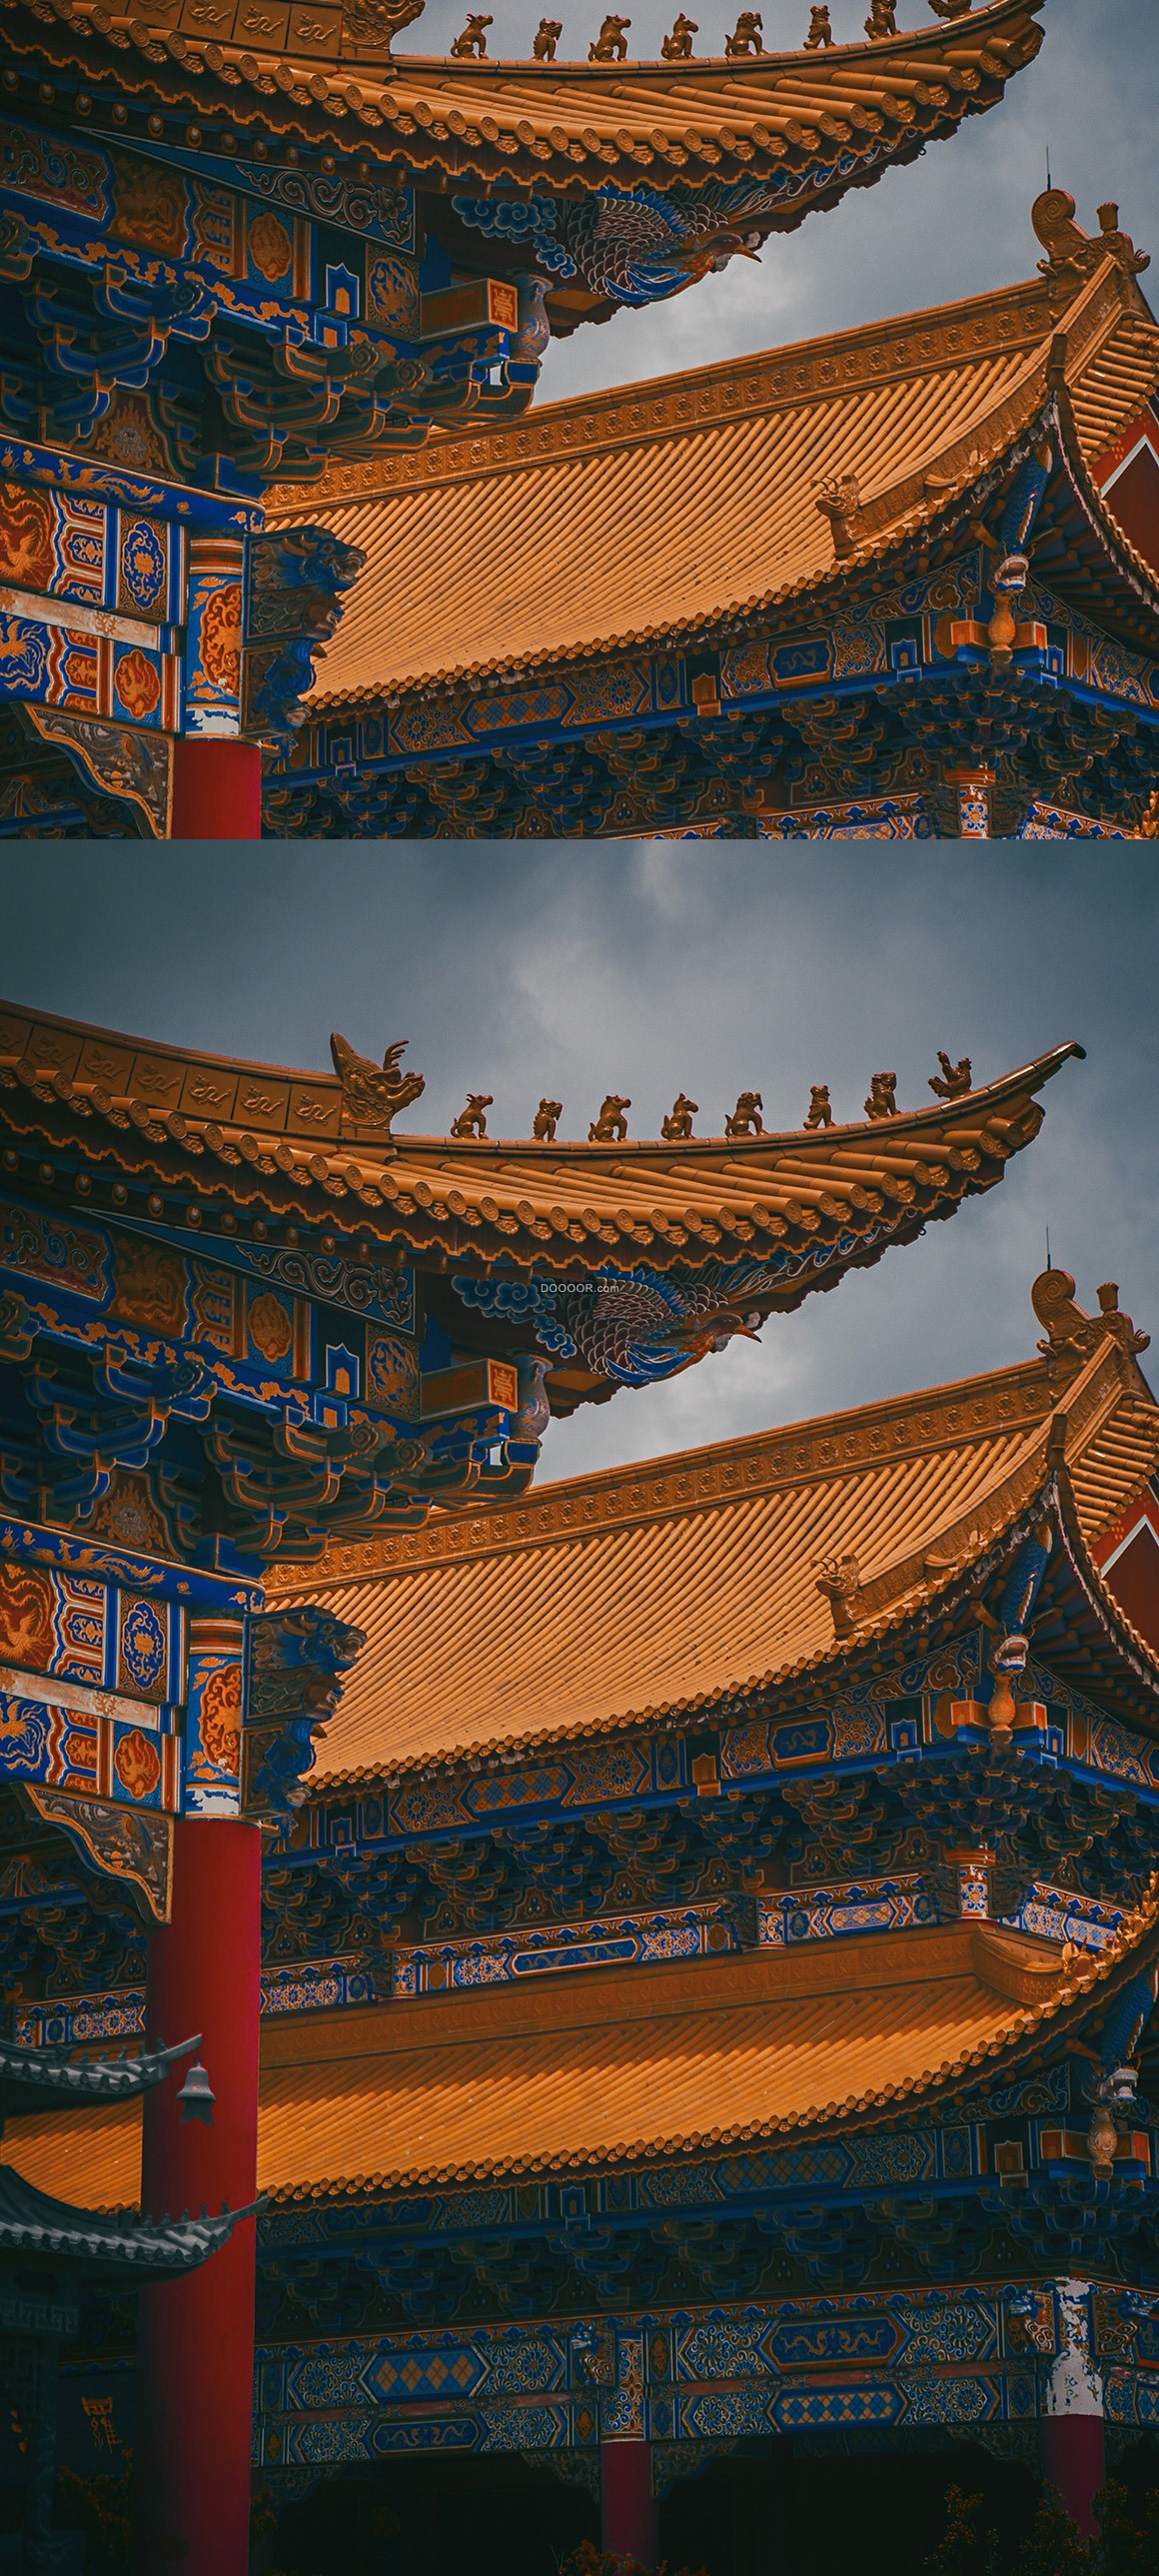 中国古代风格建筑艺术作品故宫雕栏画栋巧夺天工建筑